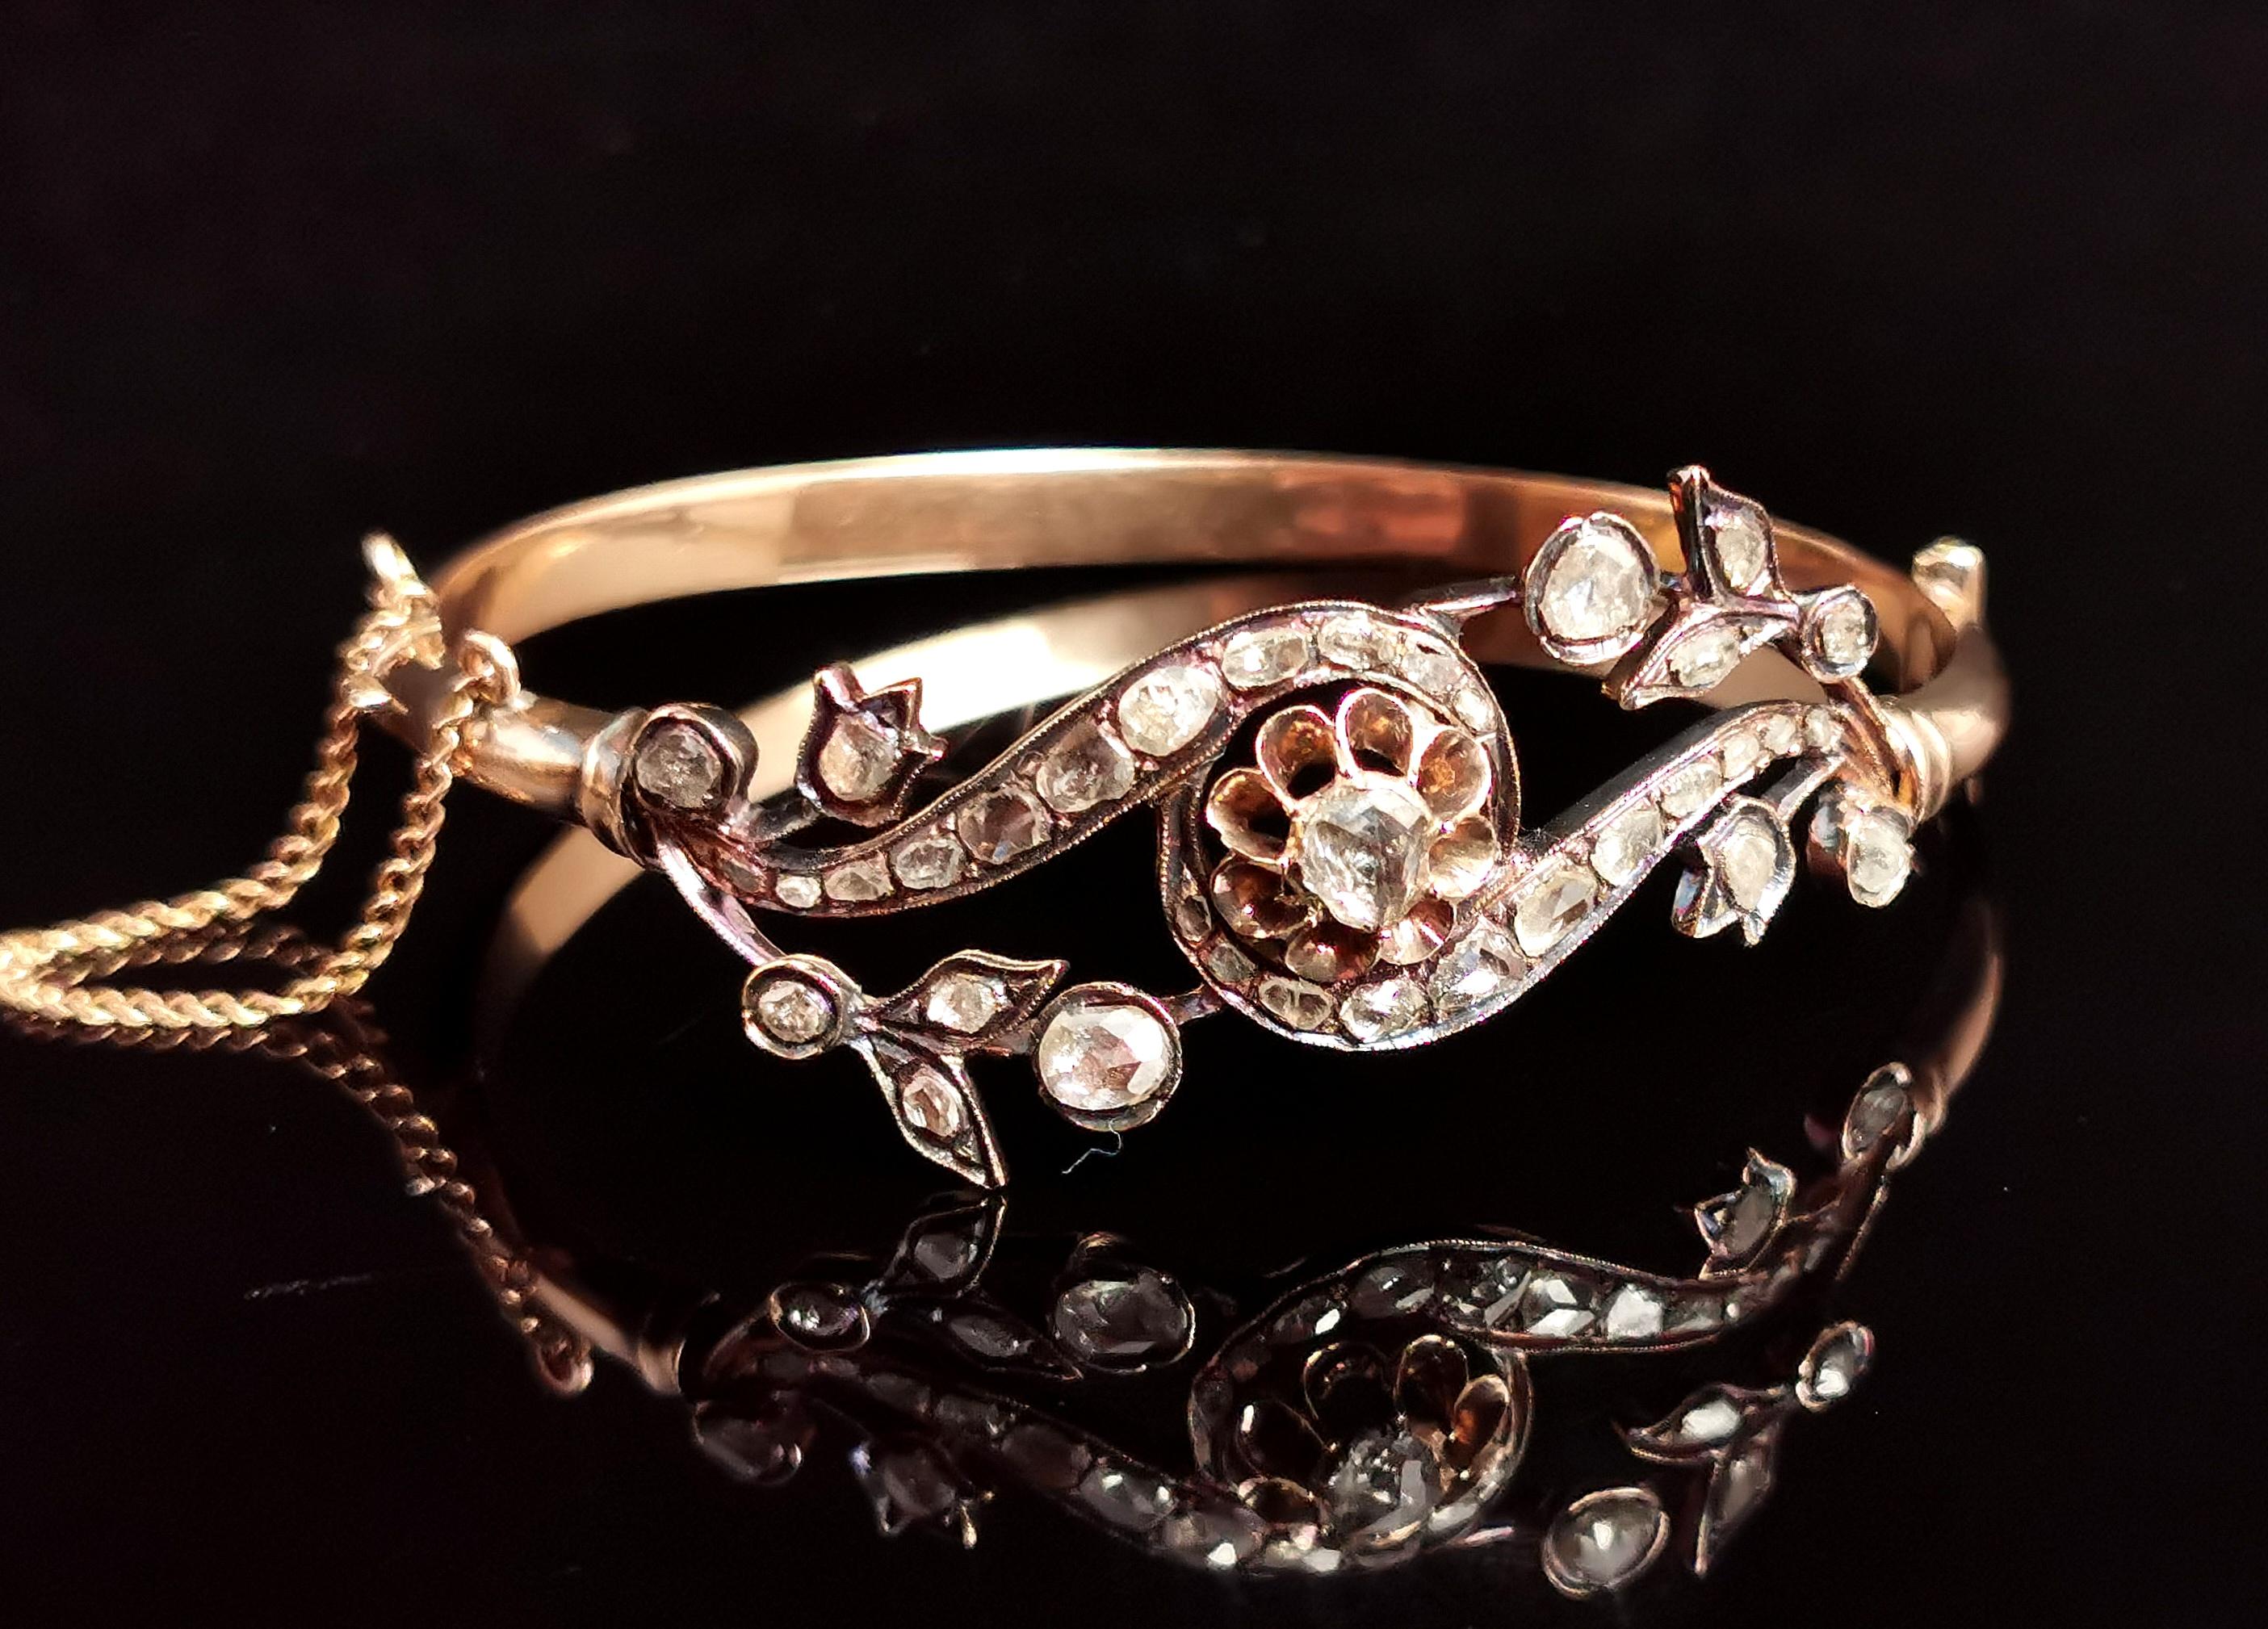 Wenn Sie auf der Suche nach einem Armreif sind, der Sie verzaubert, dann ist dieser antike Diamantarmreif mit Rosenschliff aus der viktorianischen Ära die perfekte Wahl!

Er wurde fachmännisch aus reichem 18-karätigem Gold mit leicht rosafarbenen